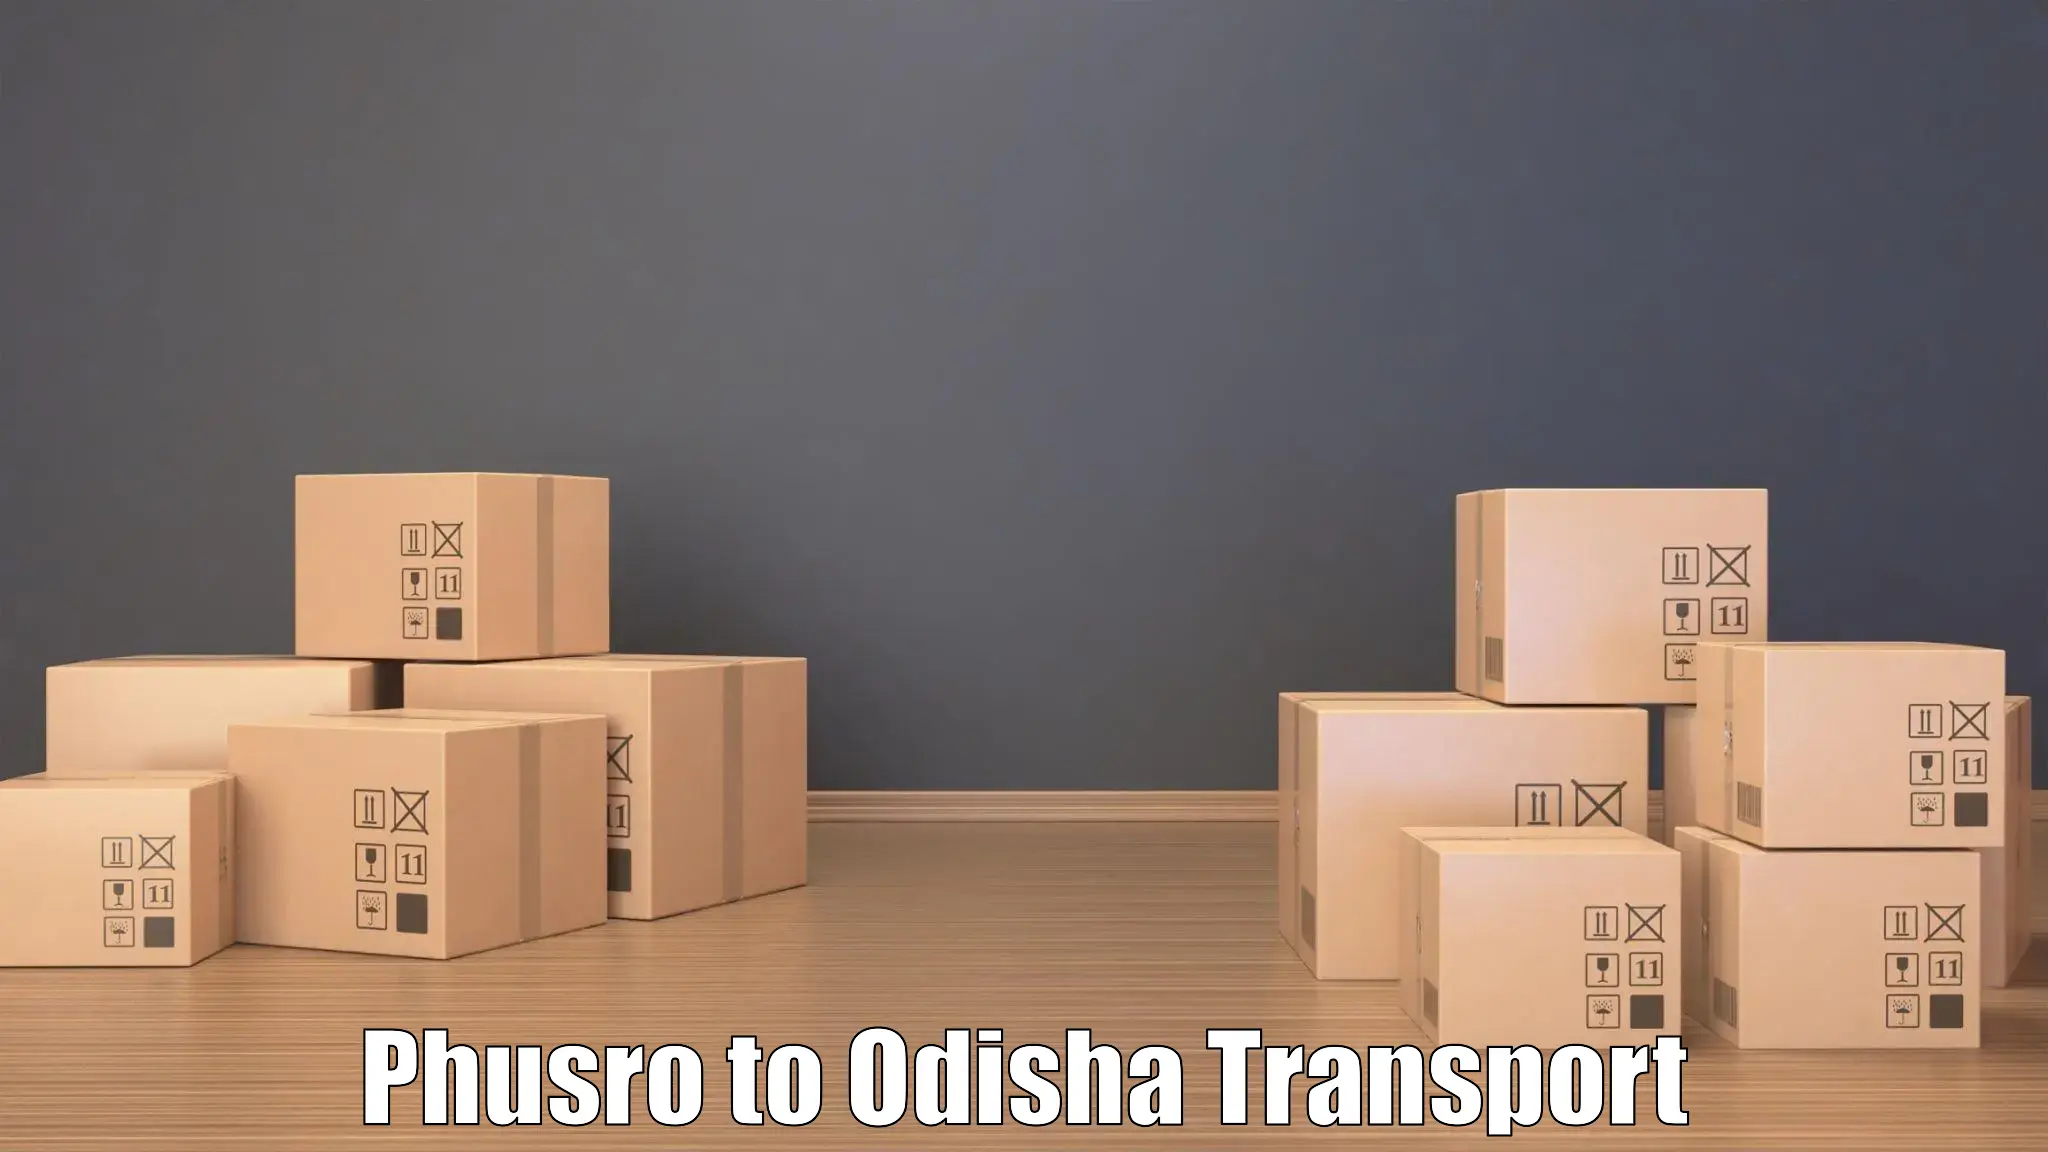 Online transport booking Phusro to Muniguda